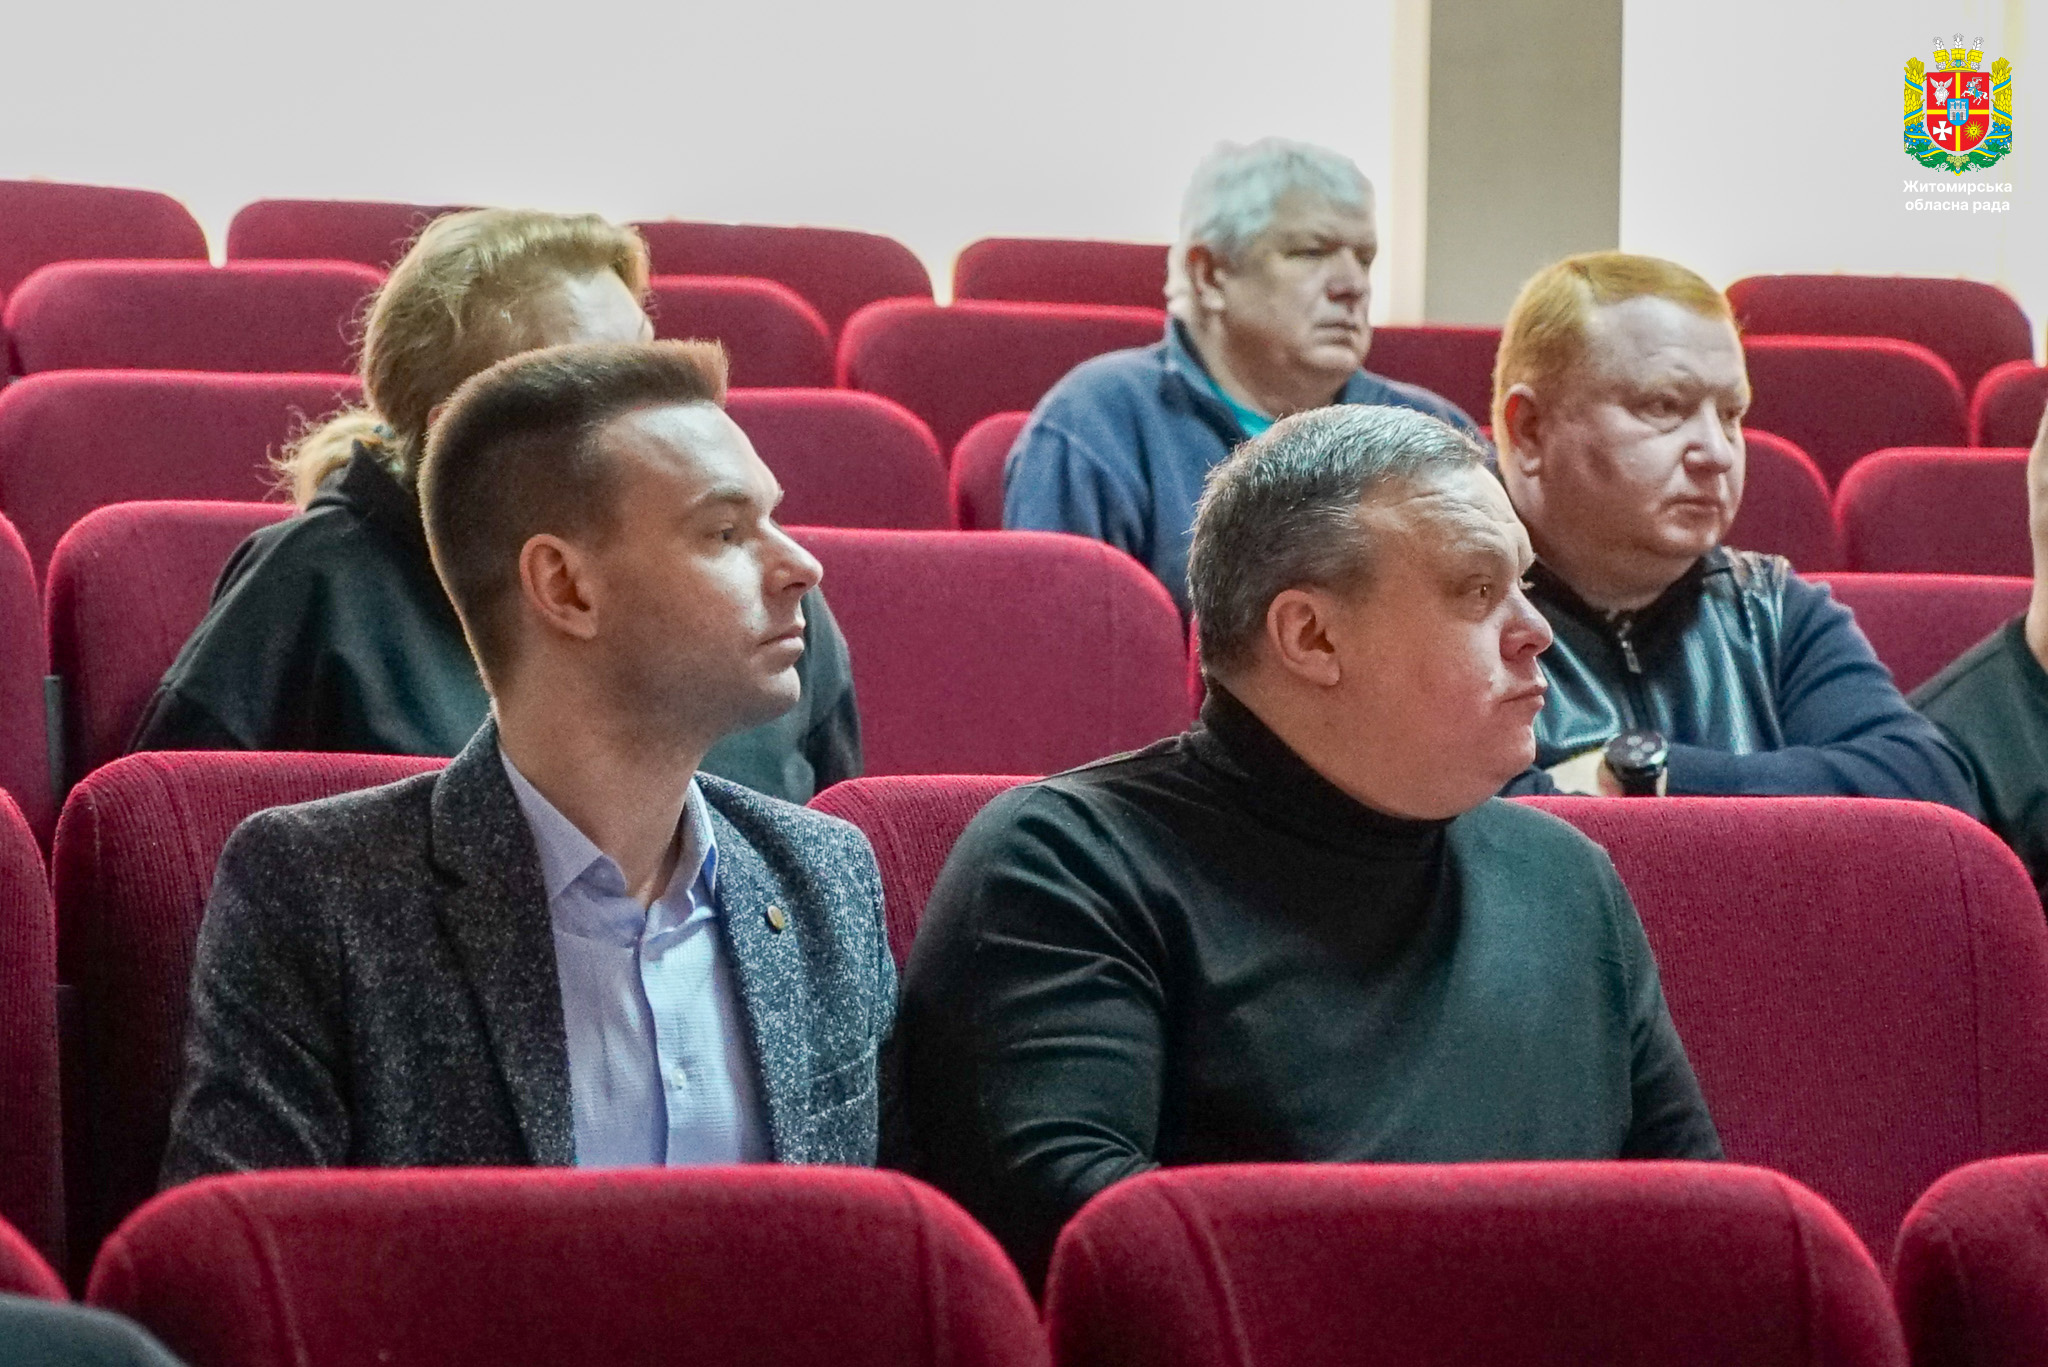 У Житомирі відбулася звітно-виборна асамблея ГО «Відділення НОК України в Житомирській області»